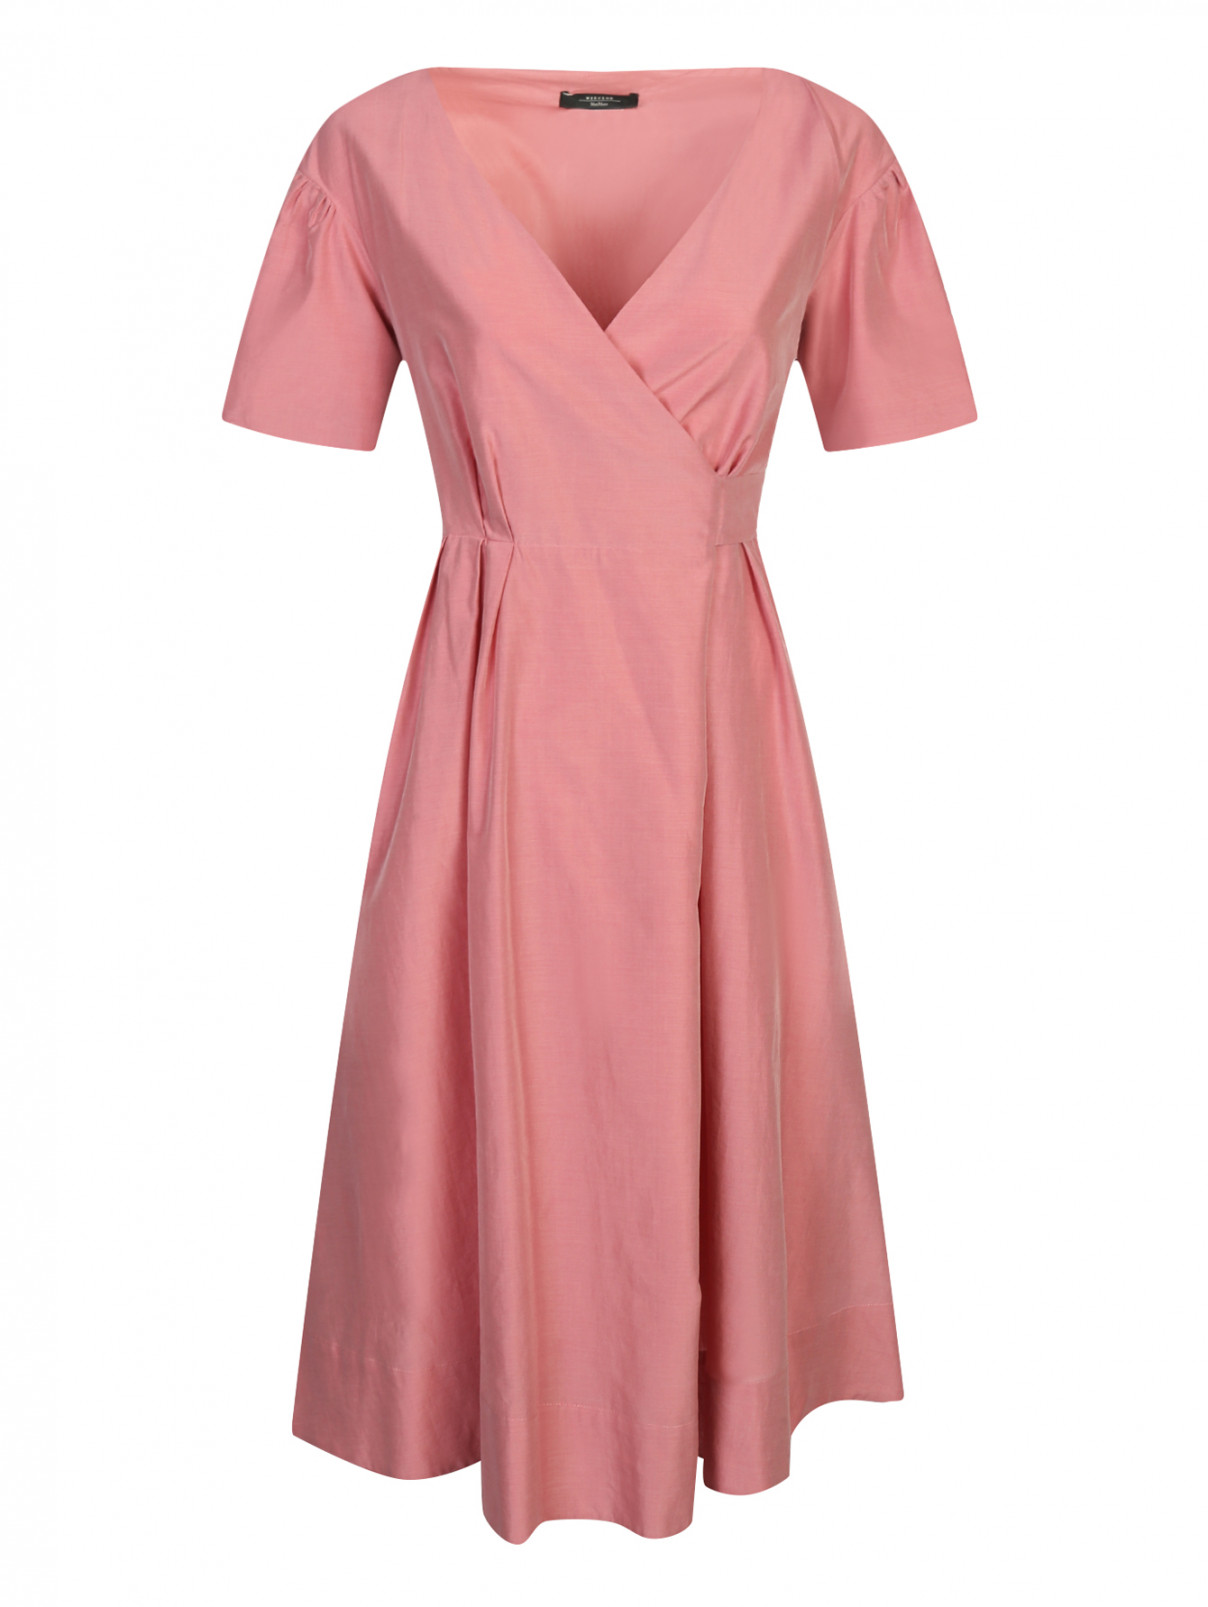 Платье из хлопка и шелка с боковыми карманами Weekend Max Mara  –  Общий вид  – Цвет:  Розовый